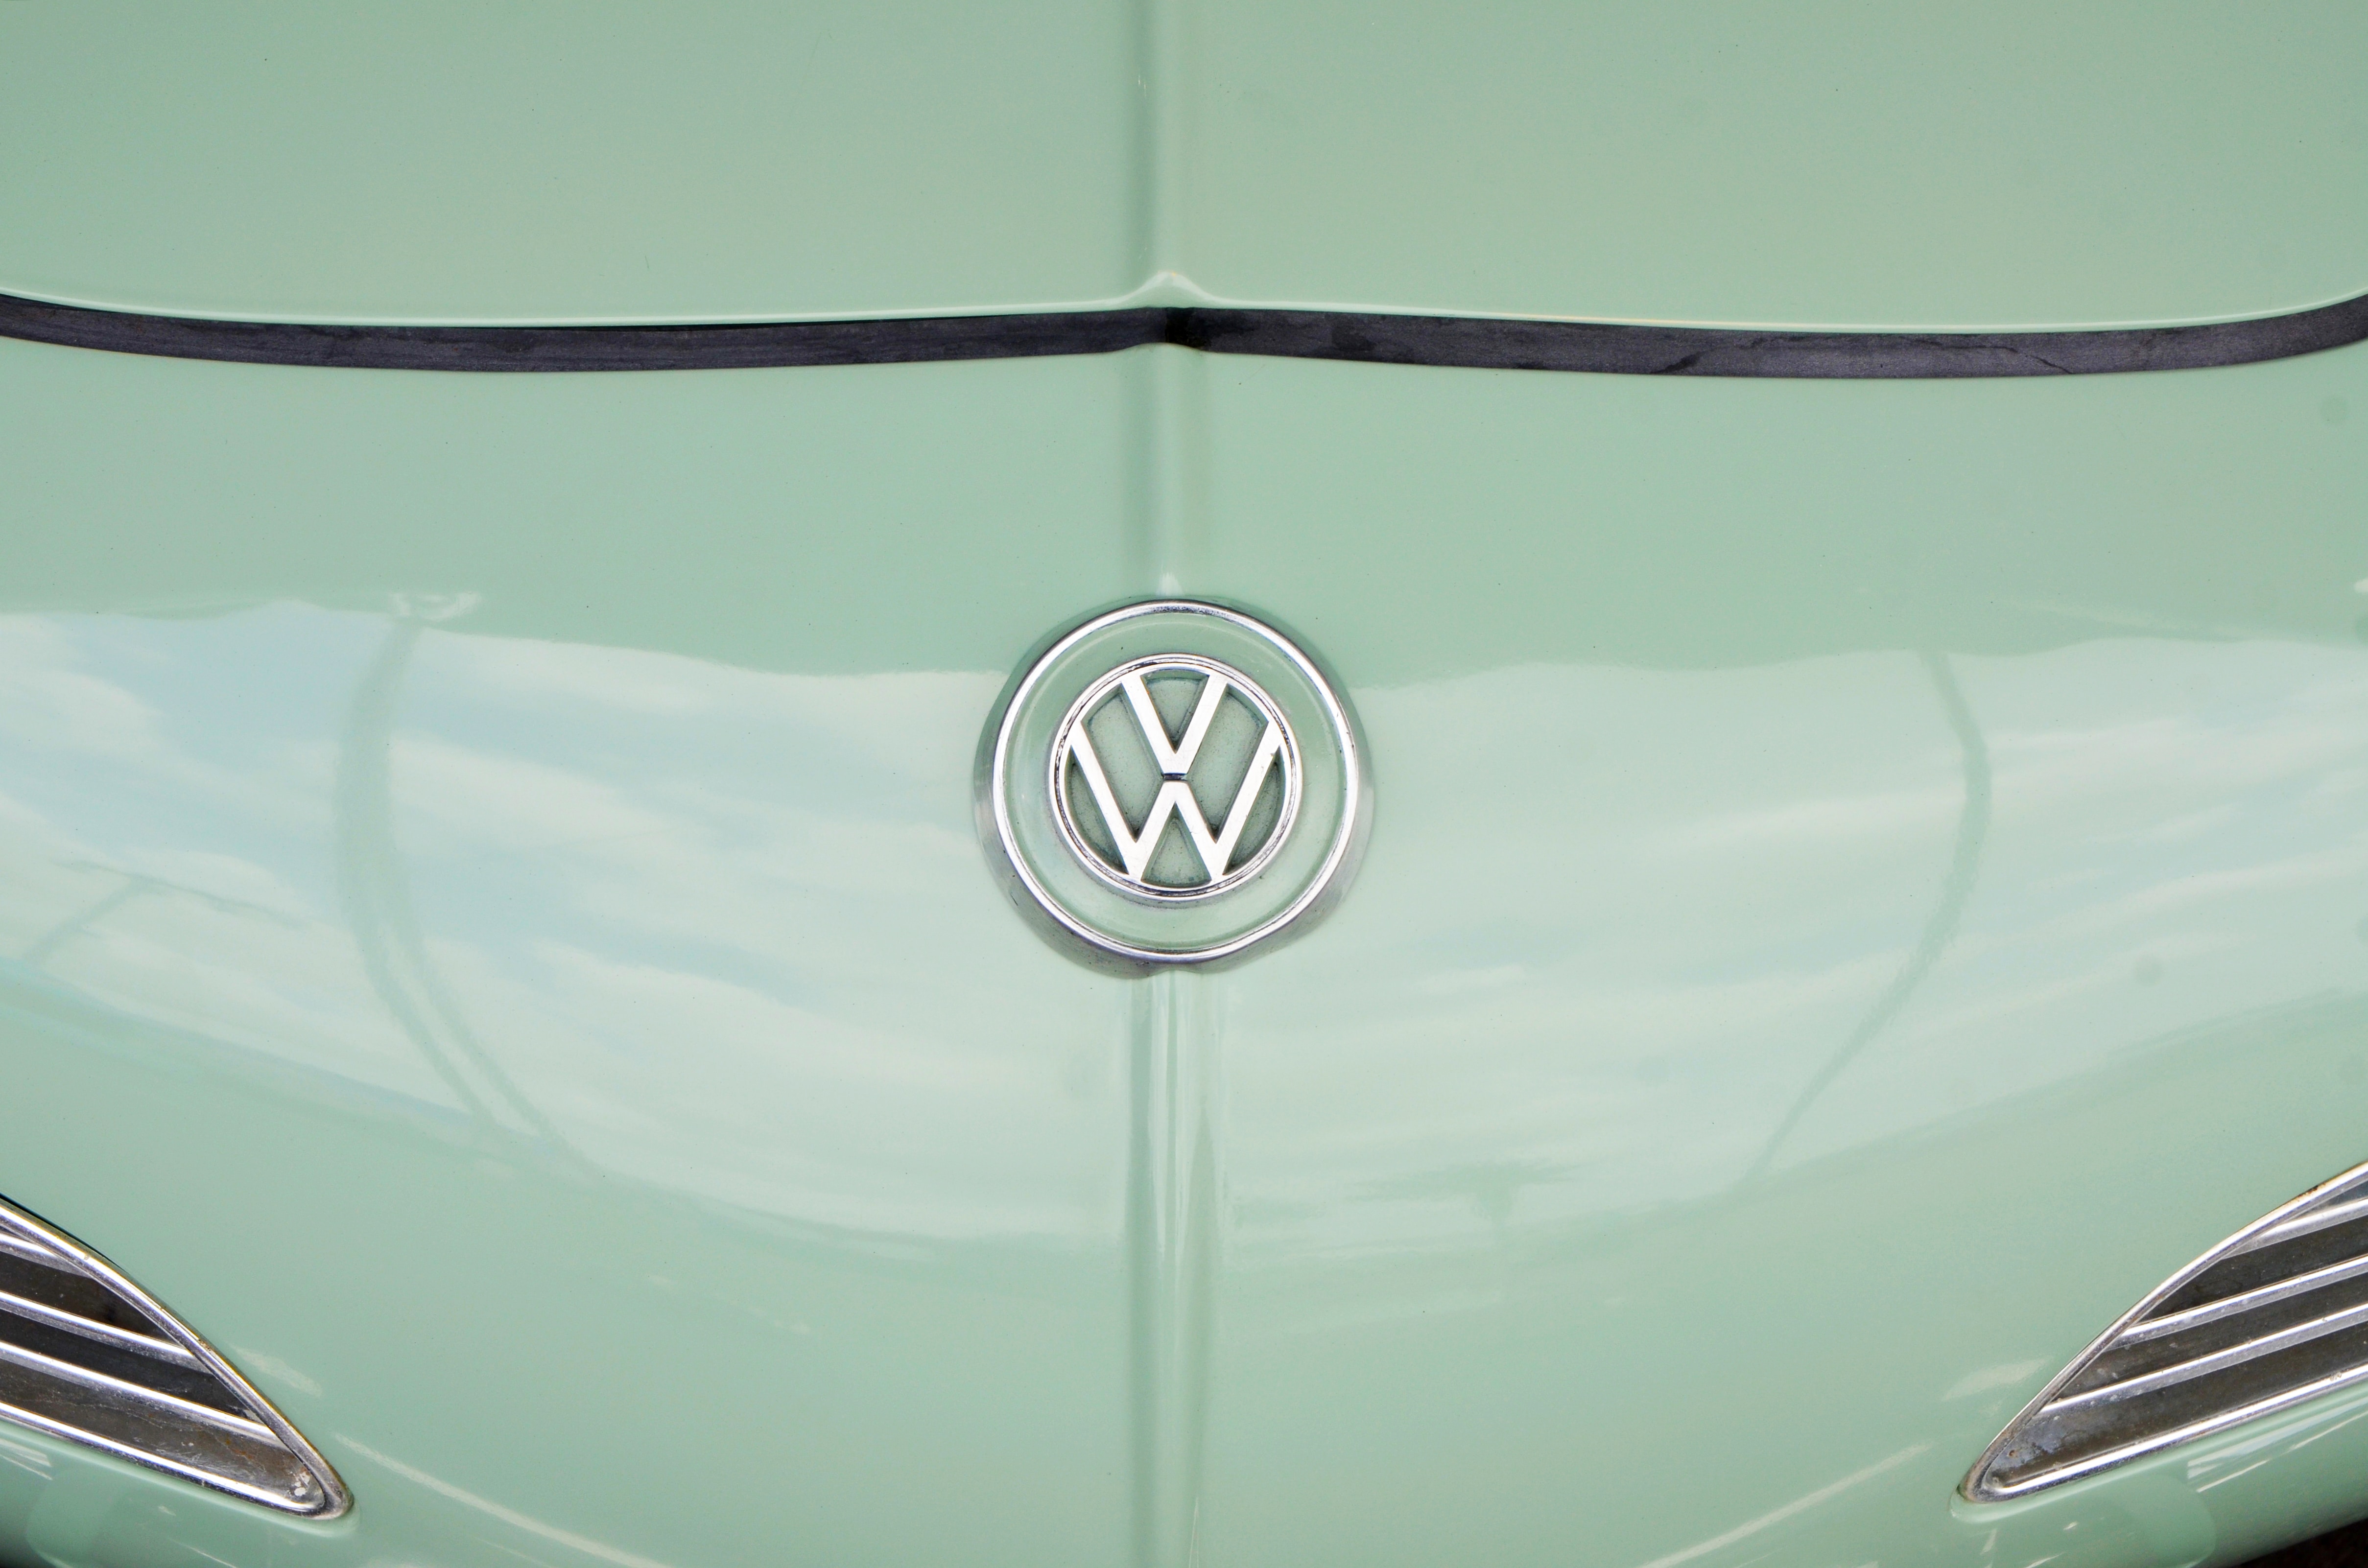 VW Musterfeststellungsklage kommt ins Rollen